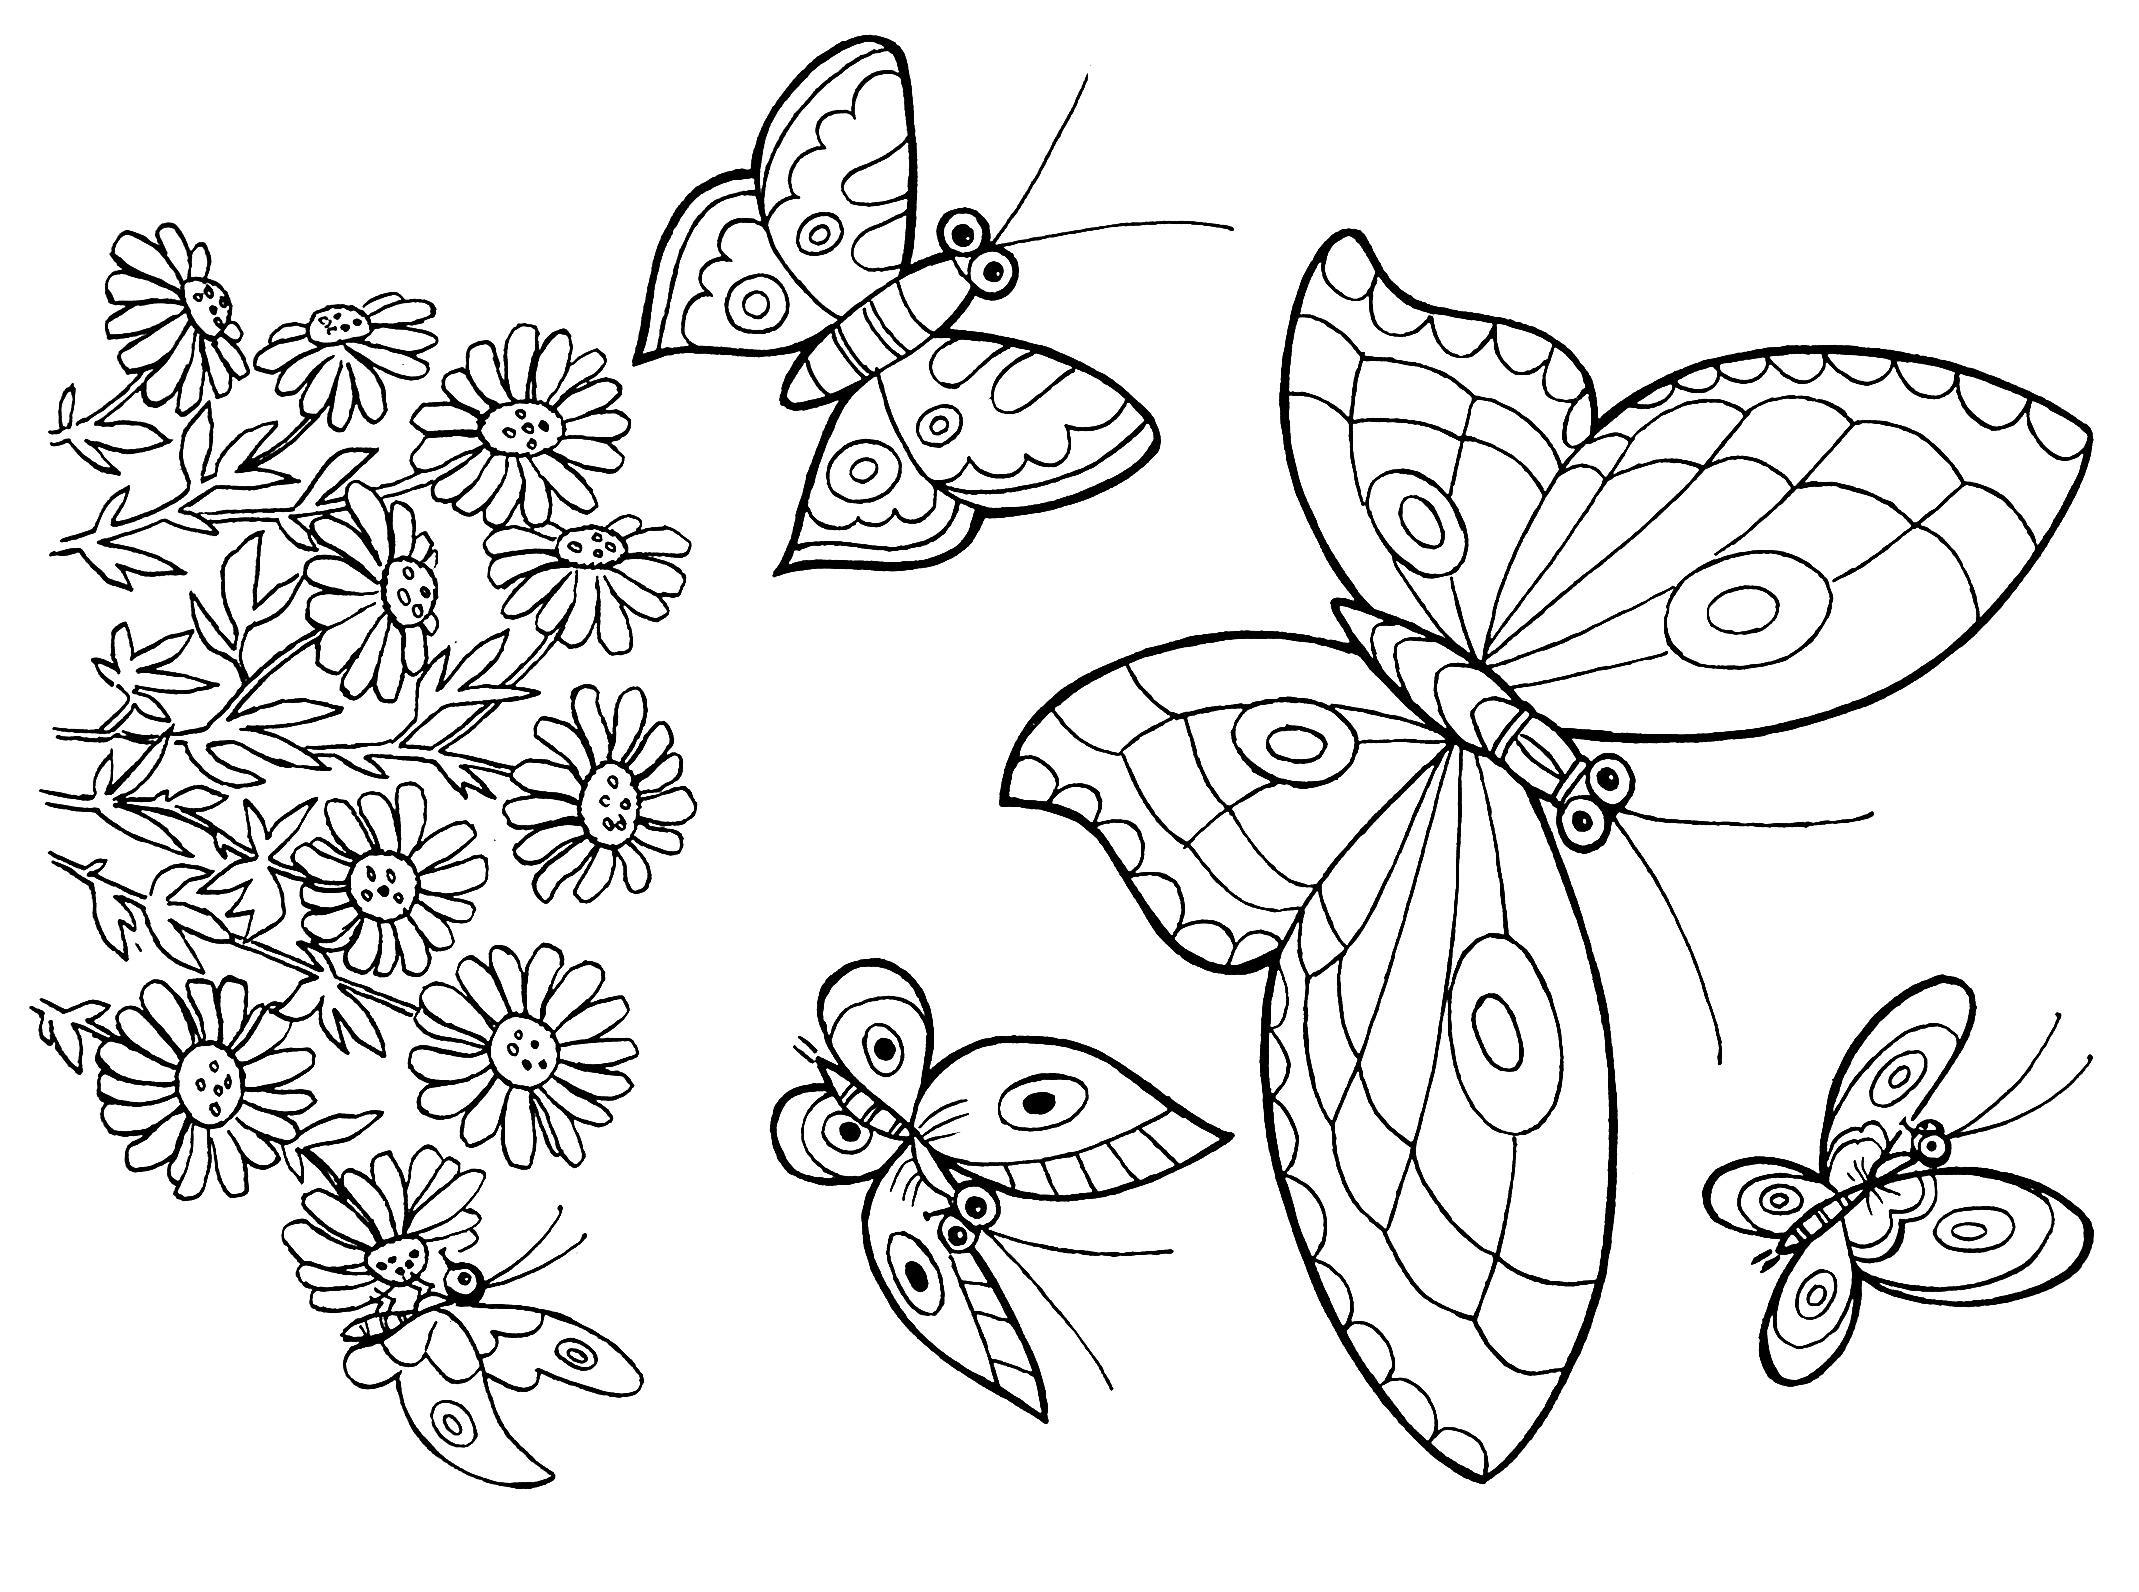 Раскраска 2 бабочки. Раскраска "бабочки". Бабочка раскраска для детей. Раскраска для девочек бабочки. Цветы и бабочки. Раскраска.